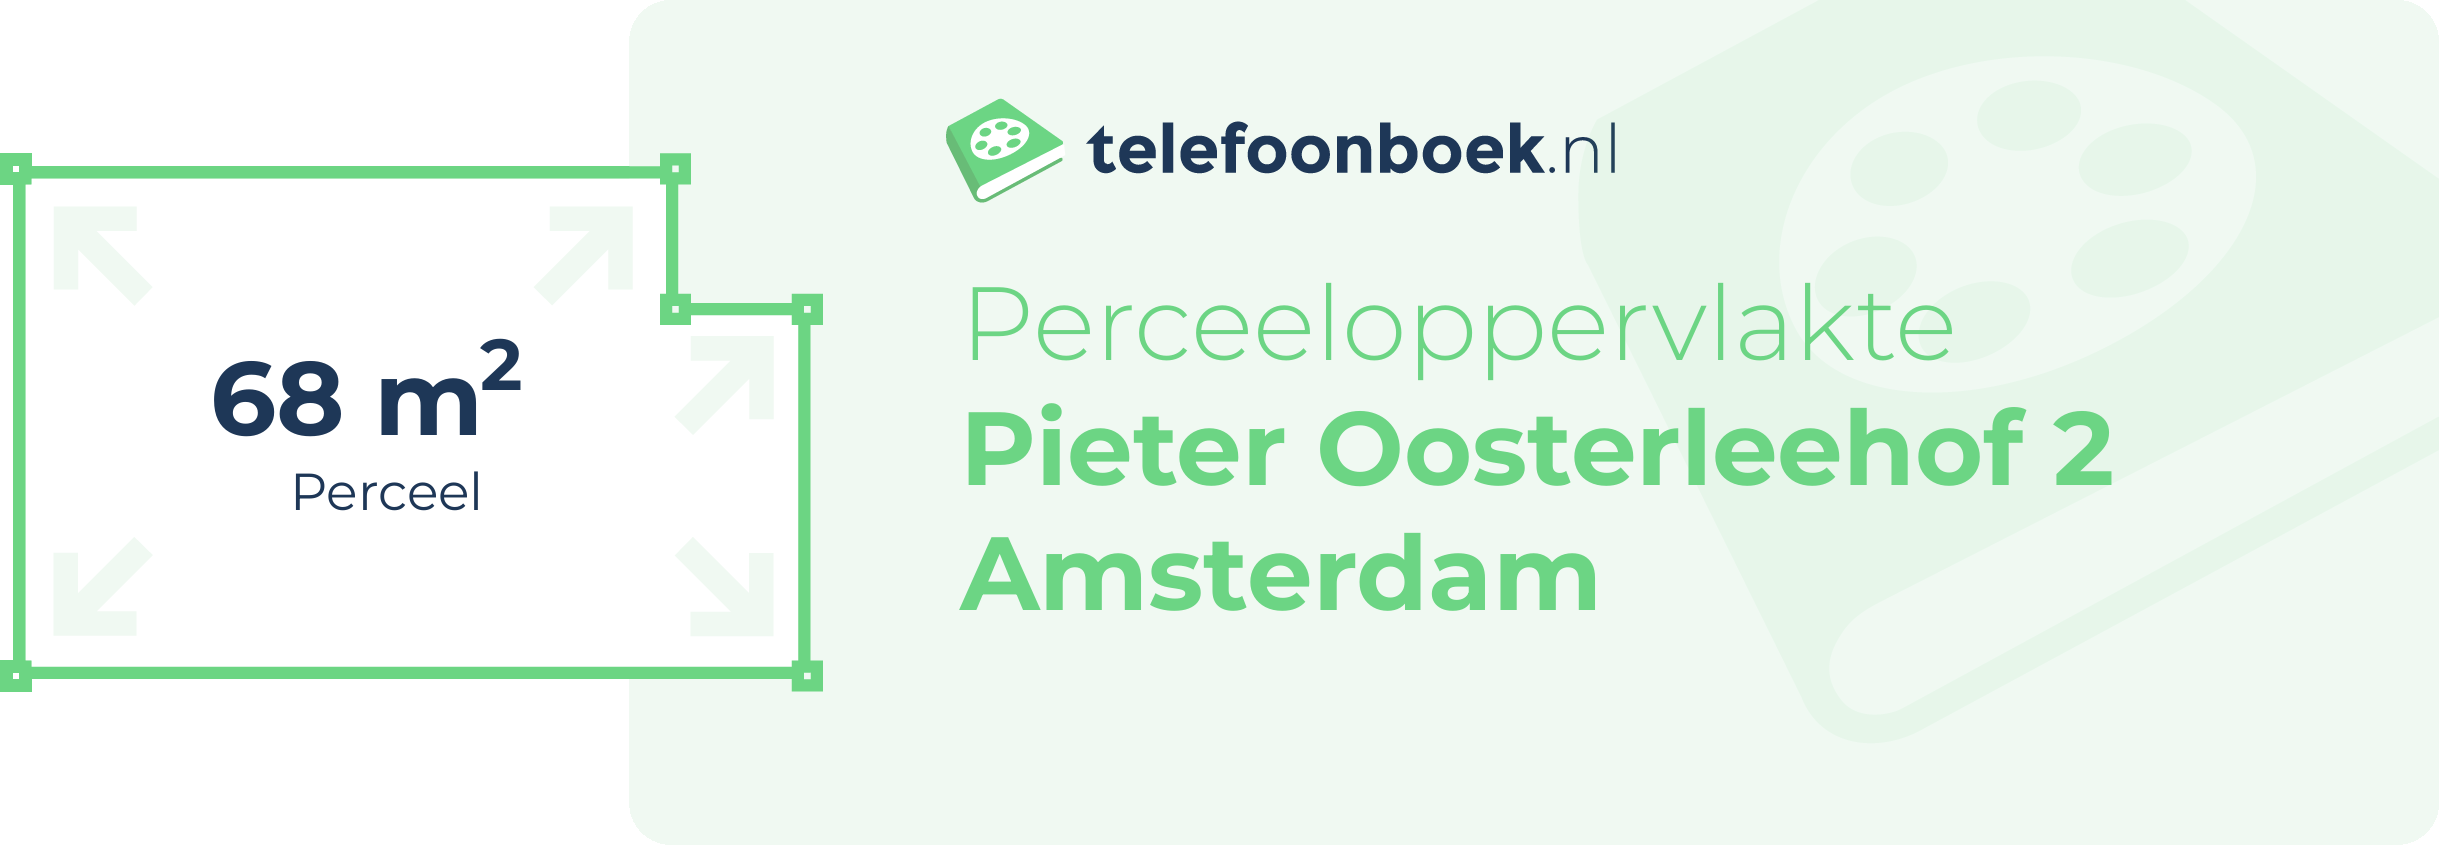 Perceeloppervlakte Pieter Oosterleehof 2 Amsterdam